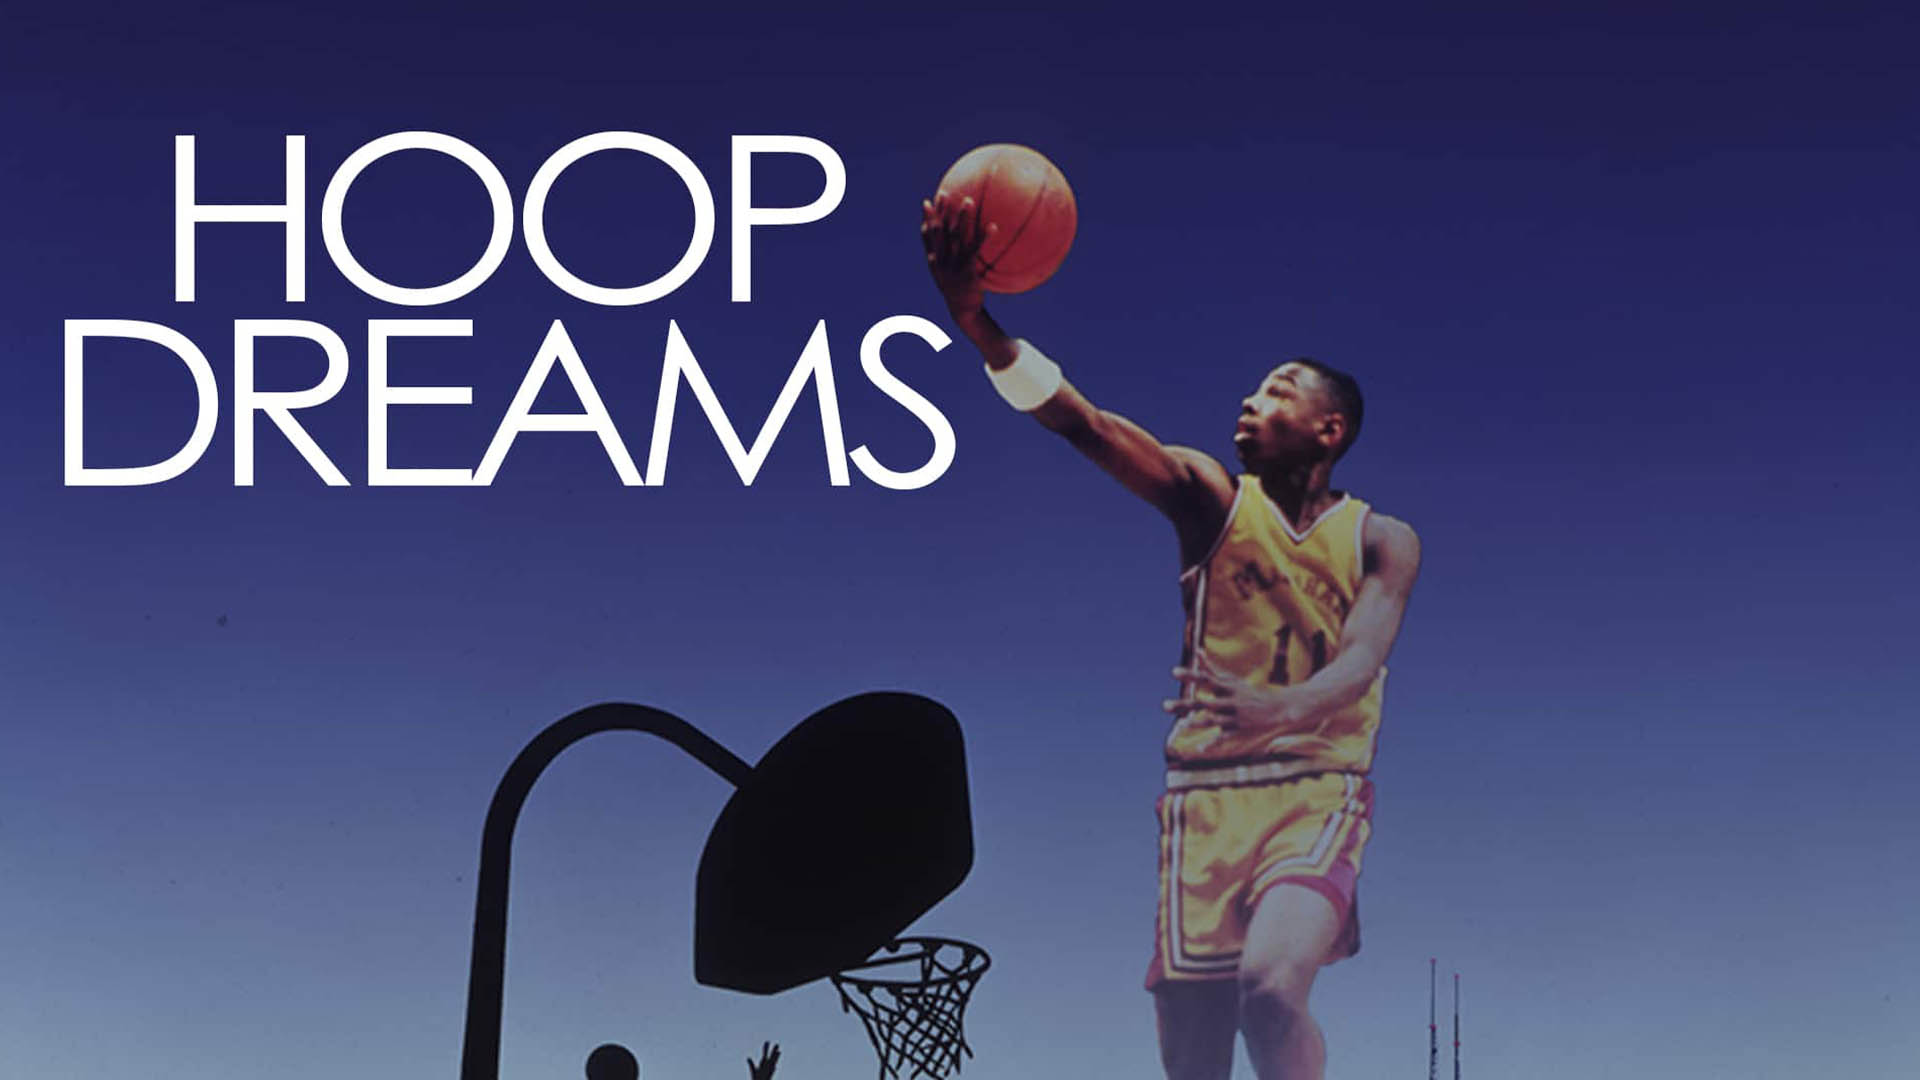 کاور فیلم Hoop Dreams با حضور ویلیام گیتس در حال بسکتبال بازی کردن